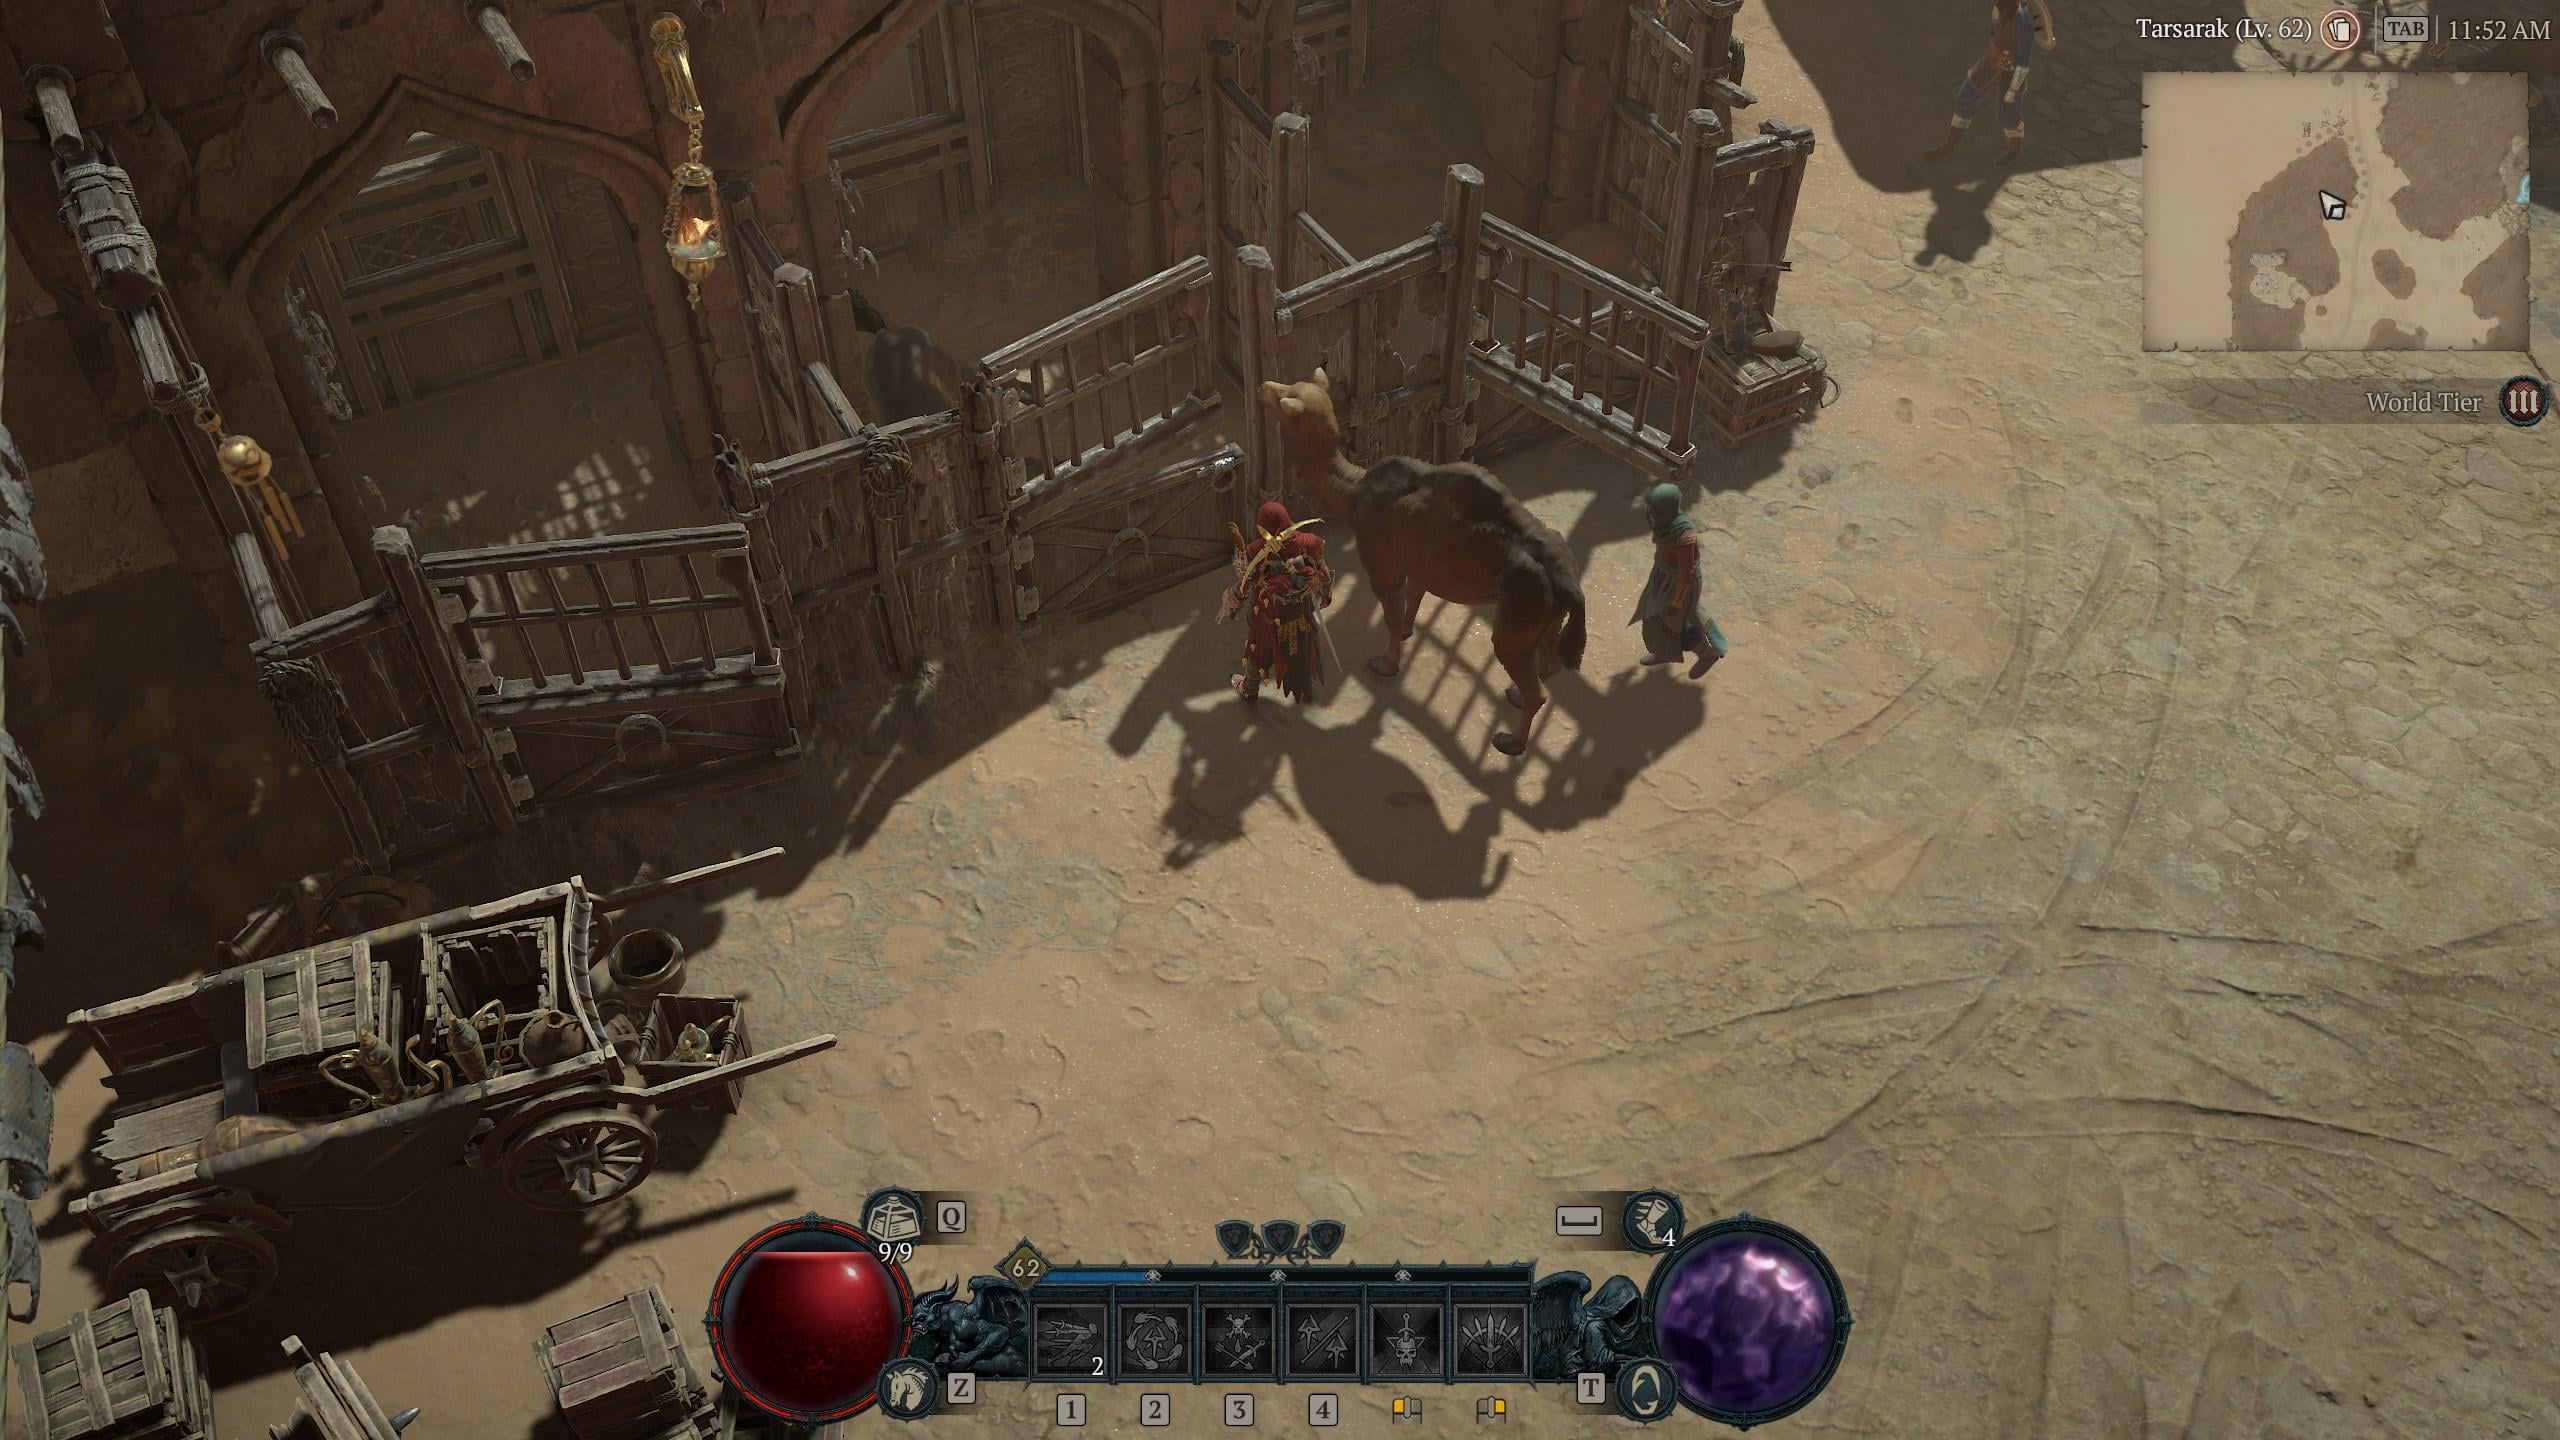 Изображение с изображением убиваемой лошади в Diablo 4 в конюшне в Тарсараке.